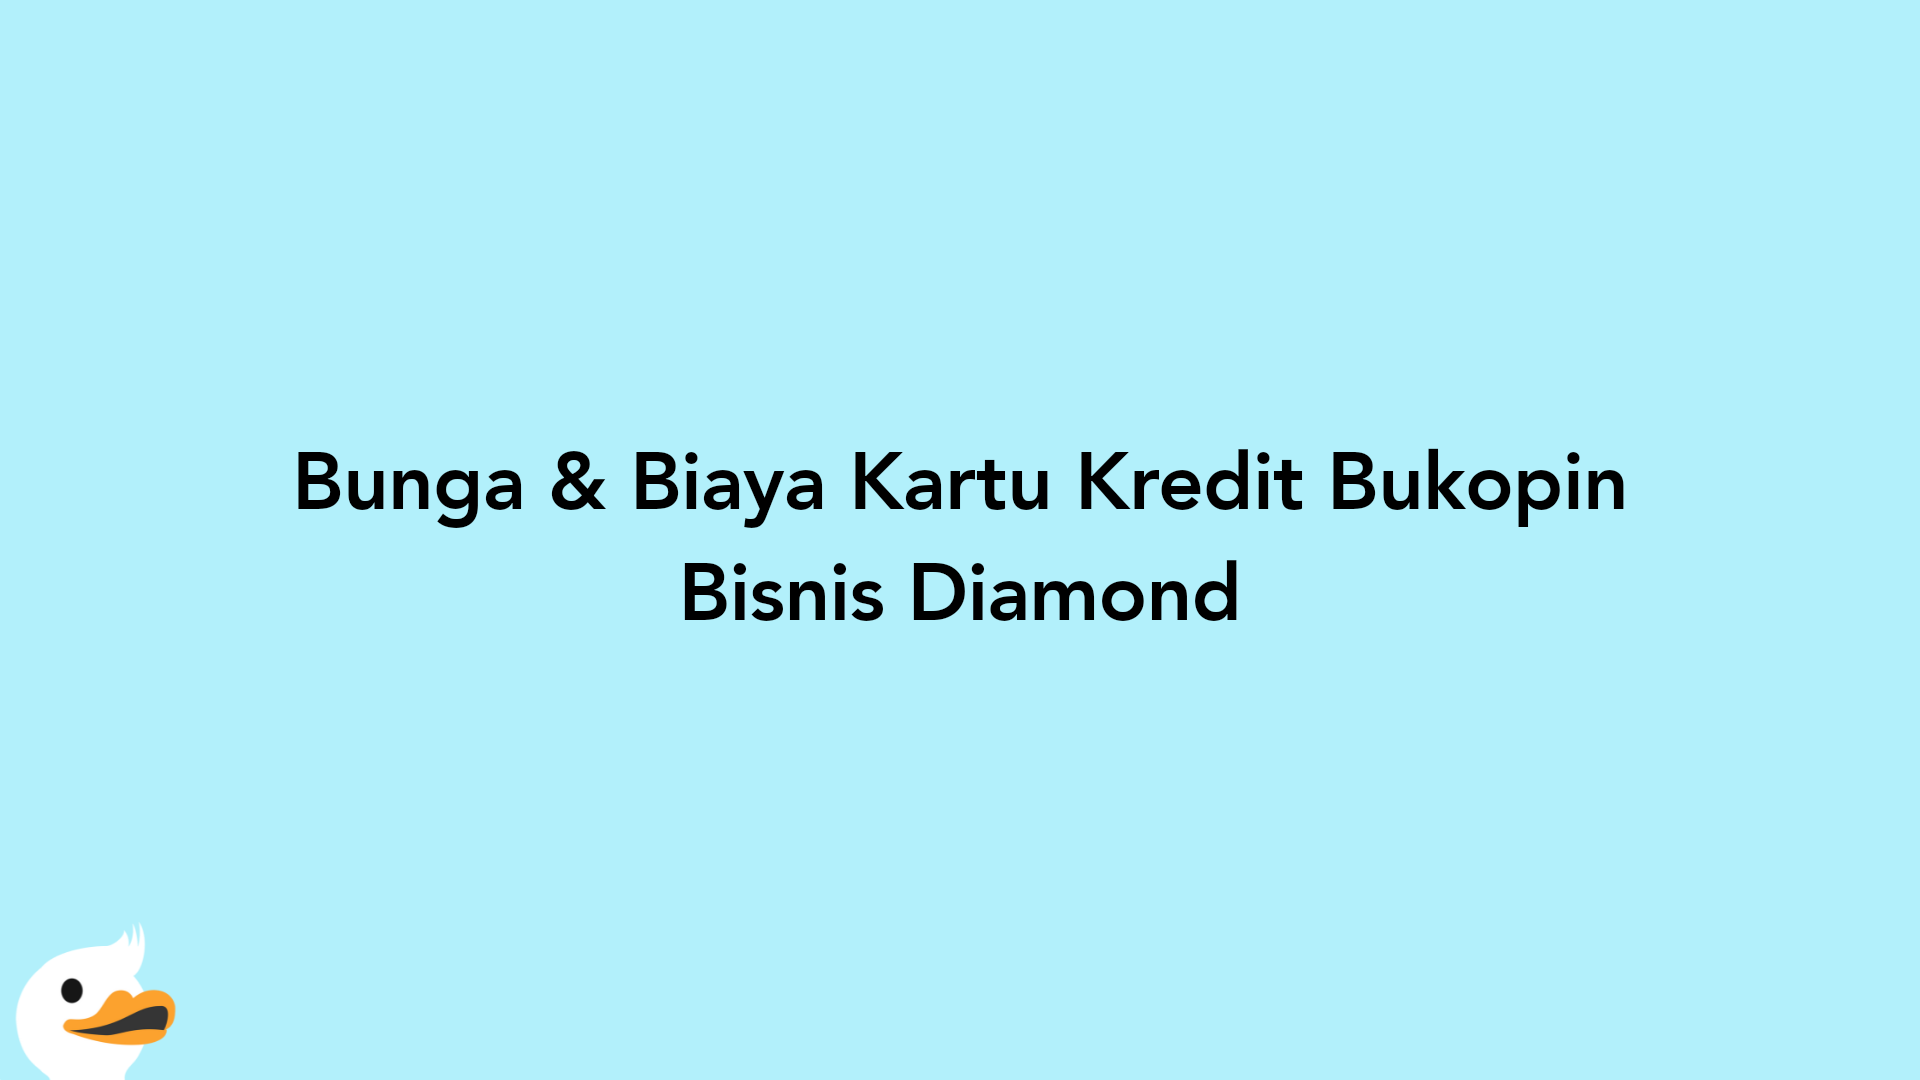 Bunga & Biaya Kartu Kredit Bukopin Bisnis Diamond